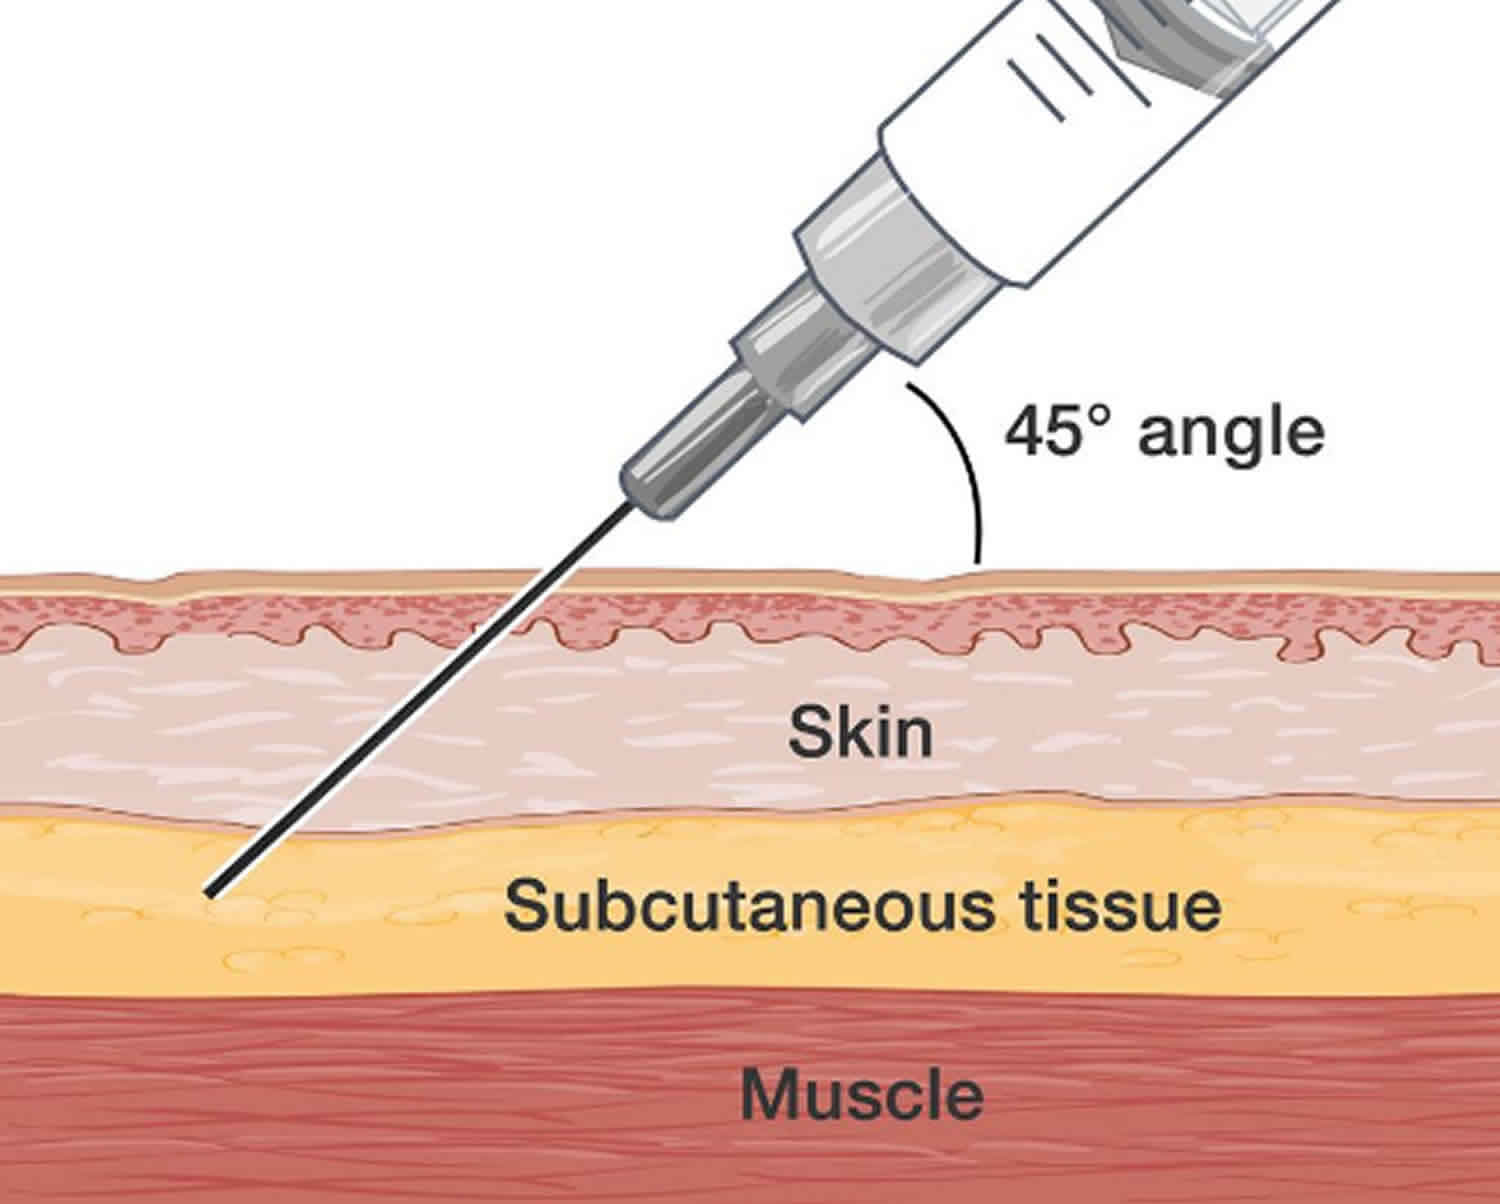 Subcutaneous injection technique